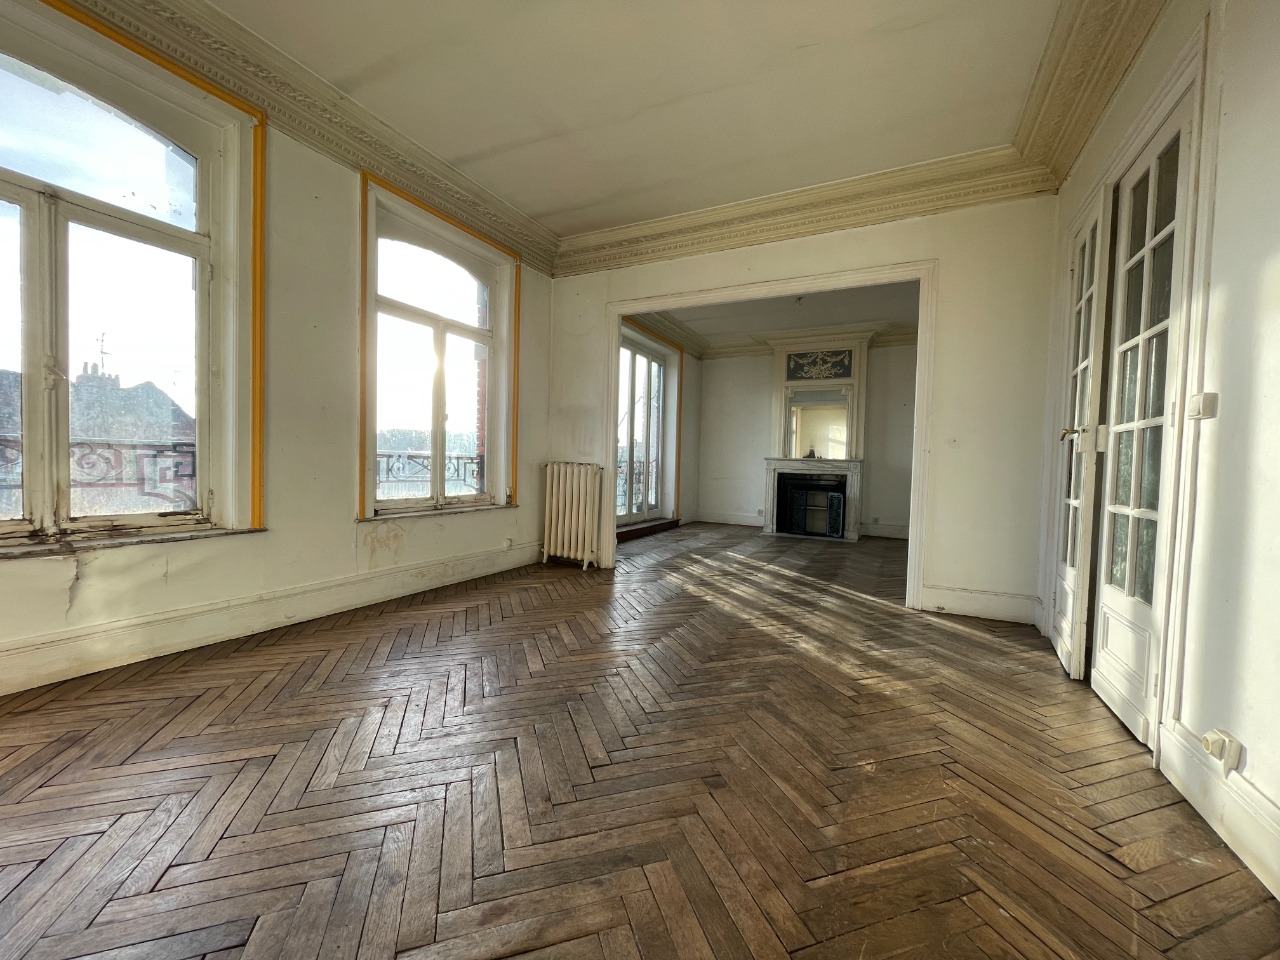 Vente appartement 59000 Lille - Magnifique Appartement de Type 3 à rénover